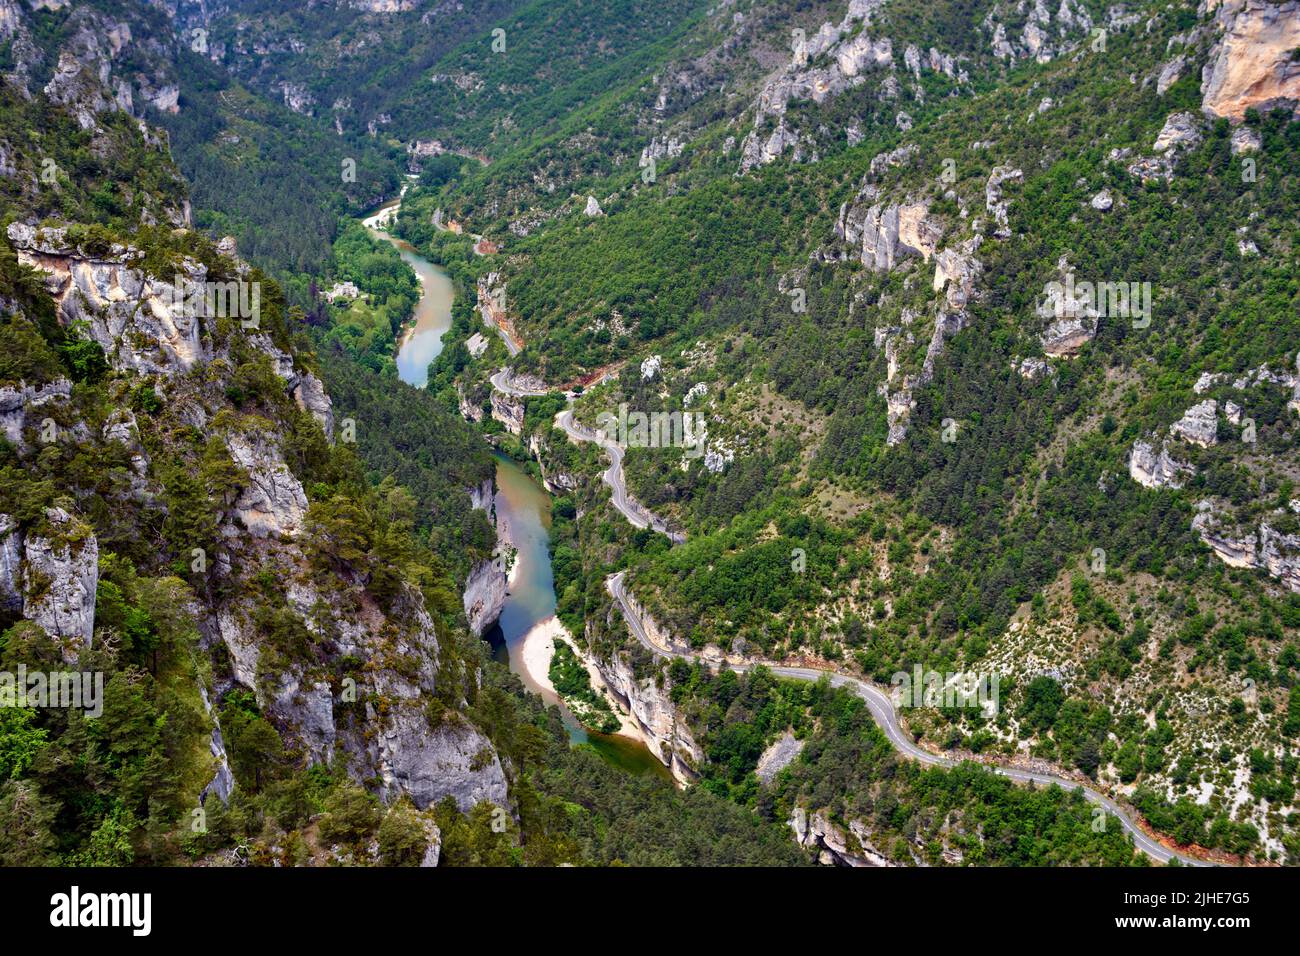 Gorges du Tarn vues du Roc des Hourtous (l'autre point sublime des Gorges). Objectif Takumar 50mm f1.4 (8 elements) Stock Photo